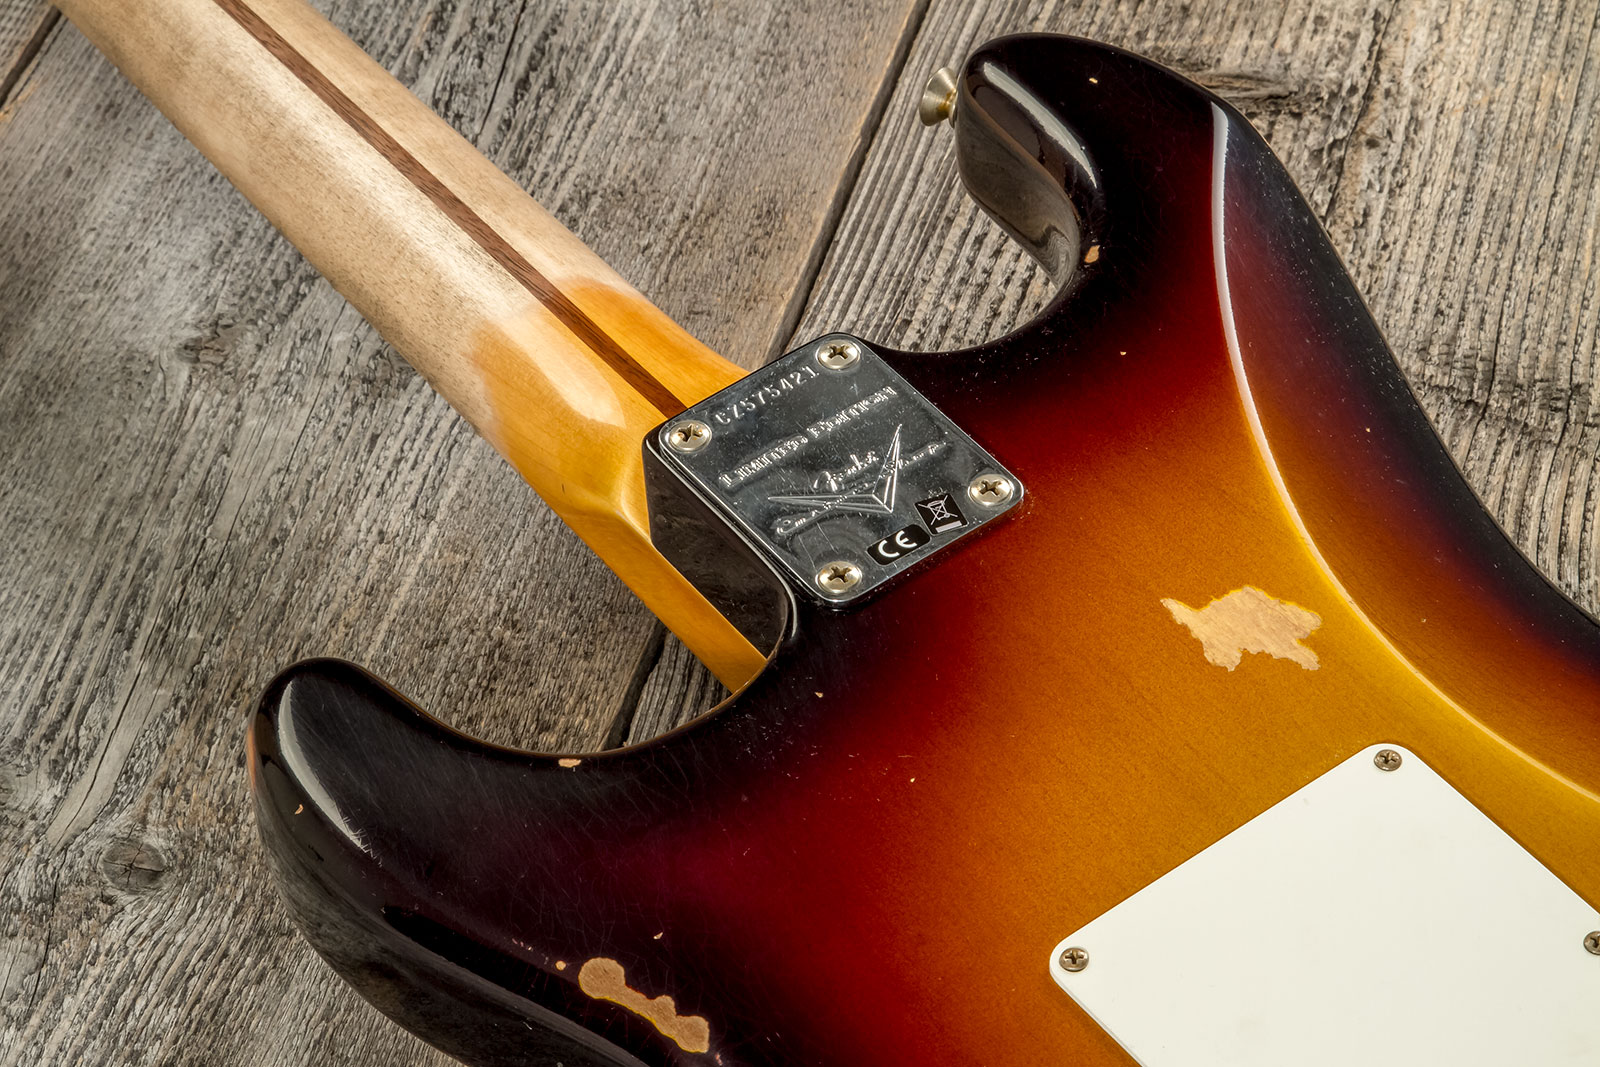 Fender Custom Shop Strat 1957 3s Trem Mn #cz575421 - Relic 2-color Sunburst - E-Gitarre in Str-Form - Variation 6